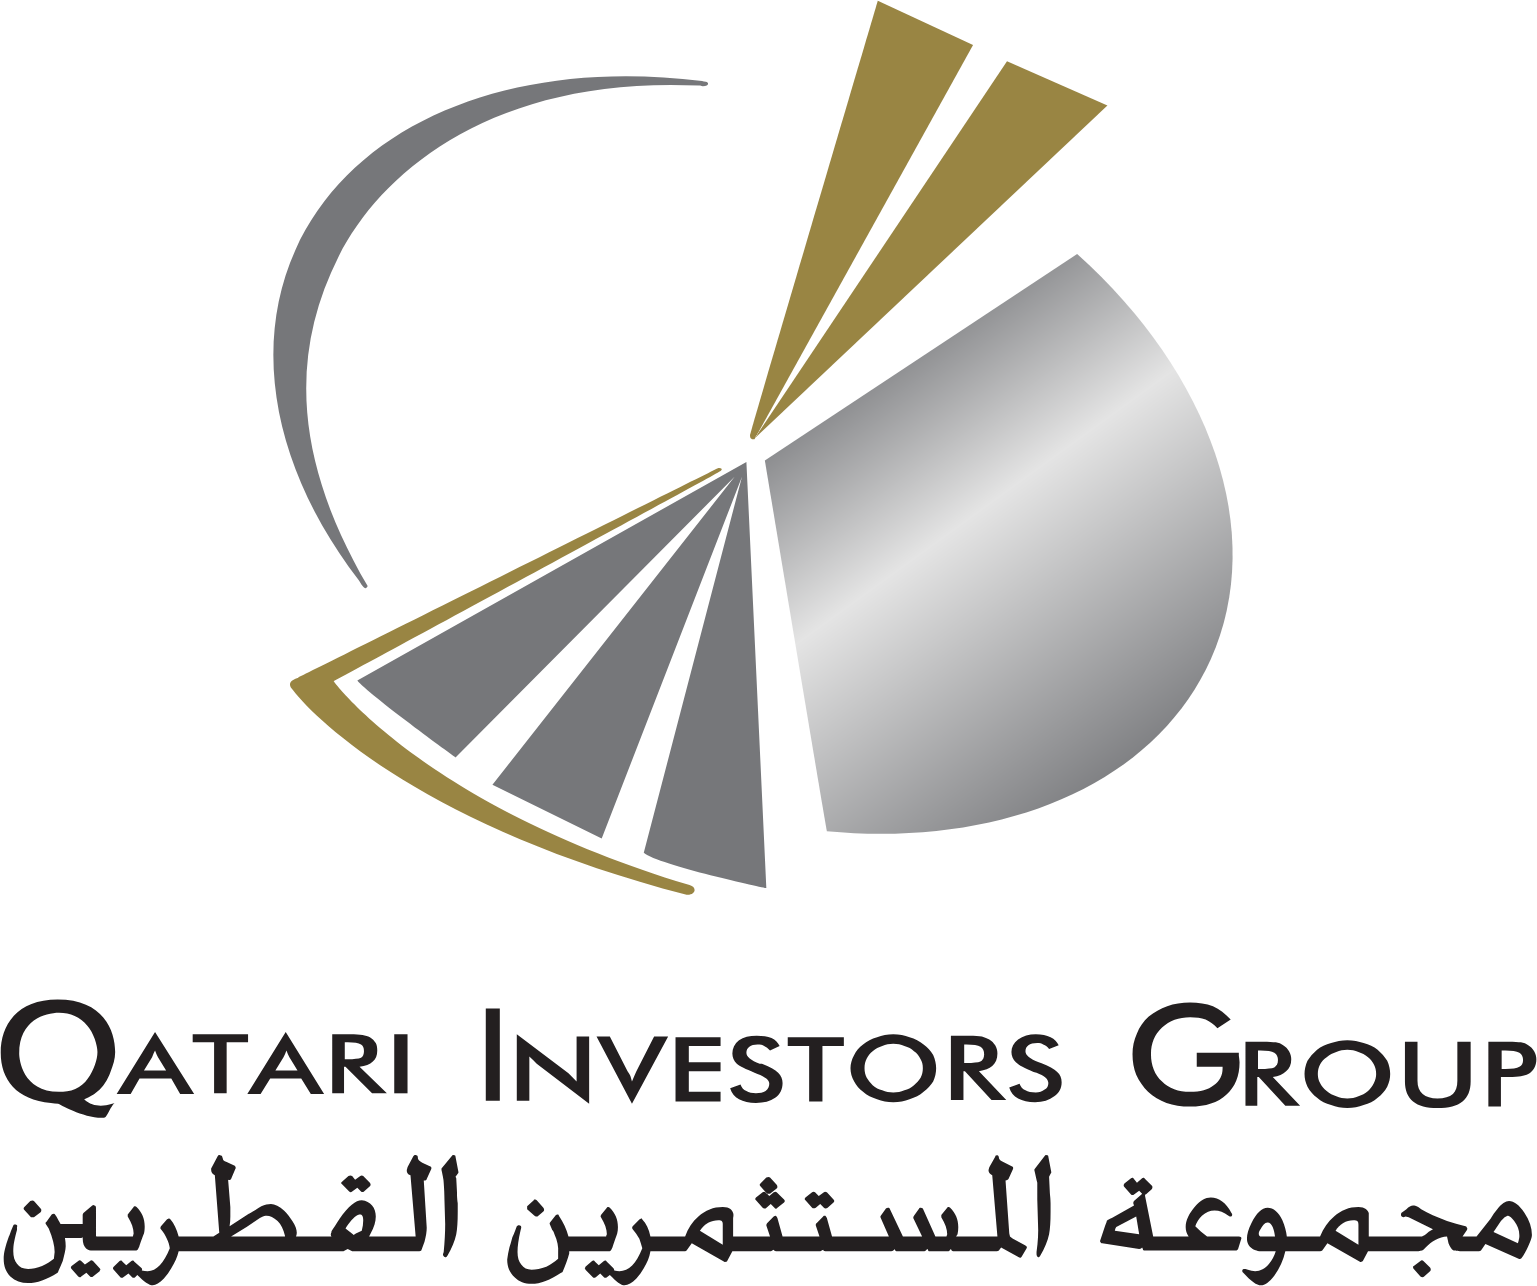 Qatari Investors Group logo large (transparent PNG)